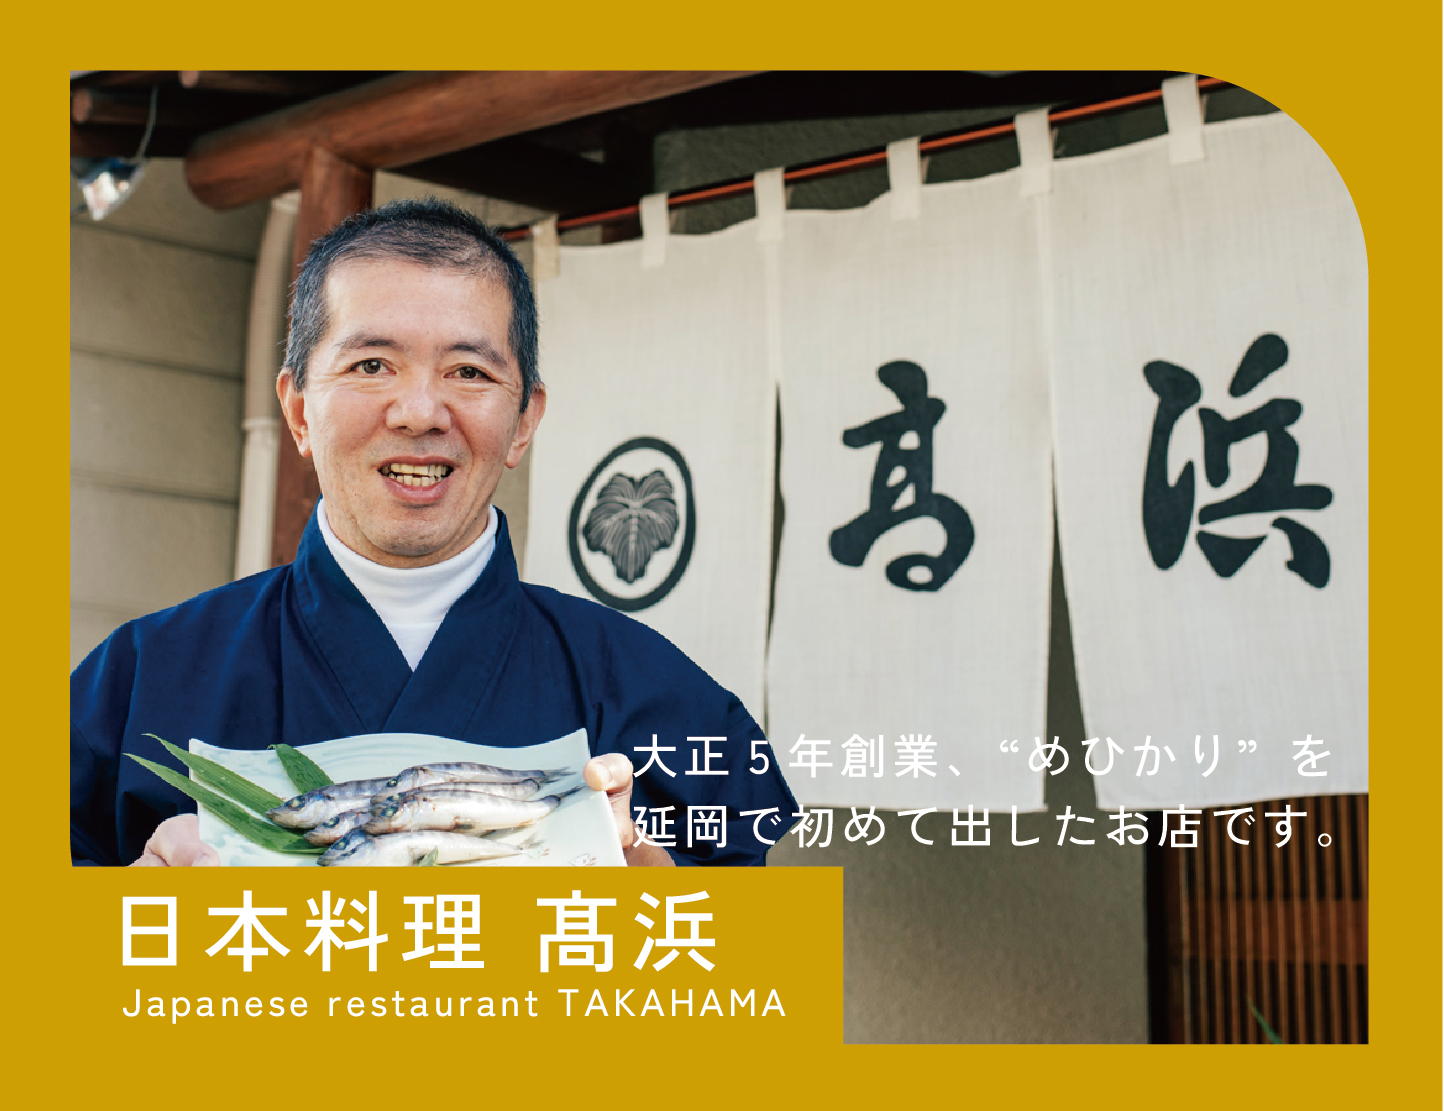 Japanese restaurant Takahama